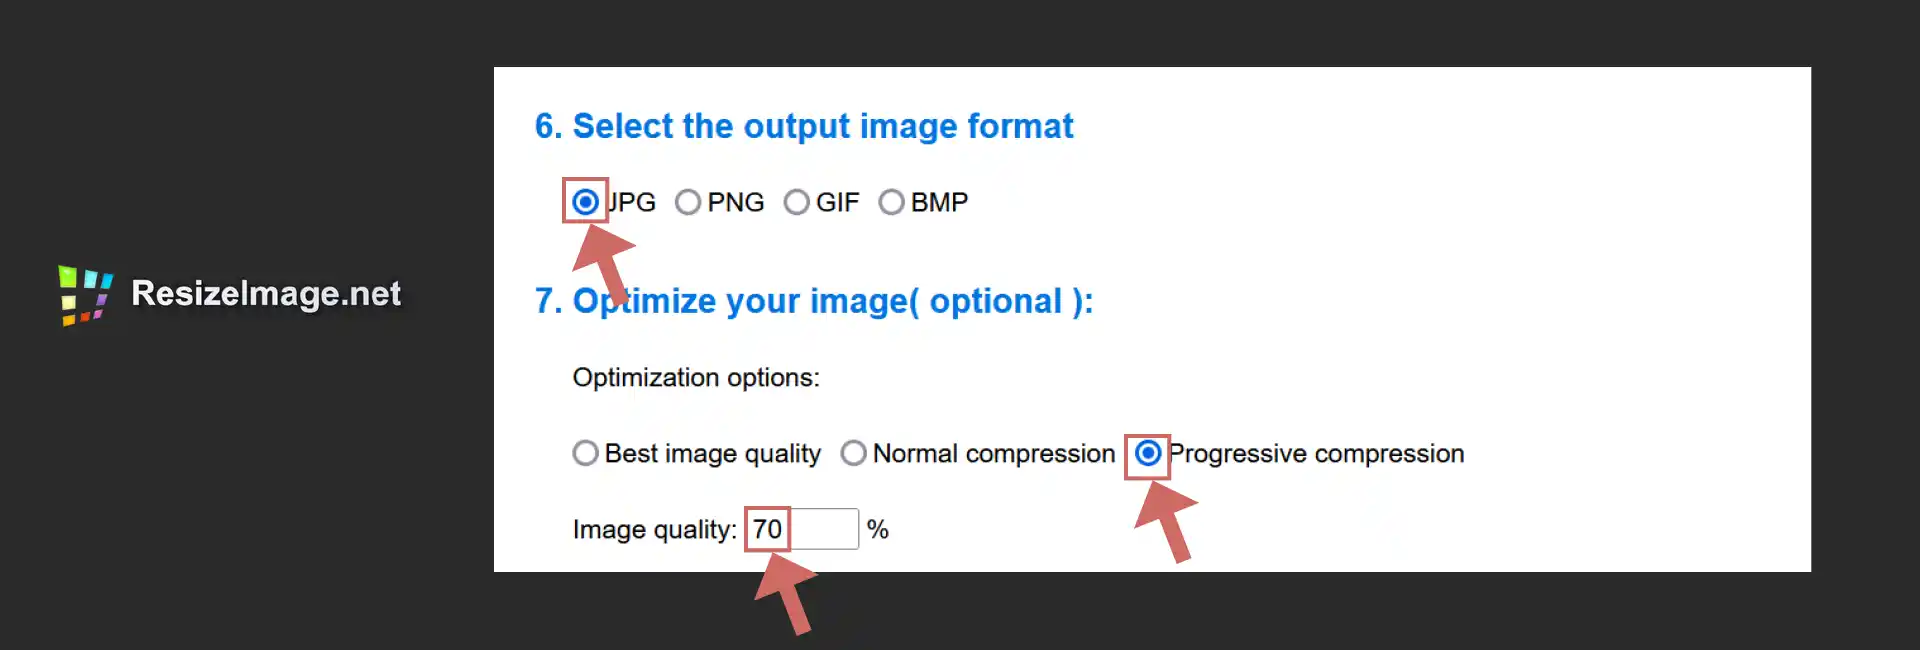 resize-image-output-optimize-image